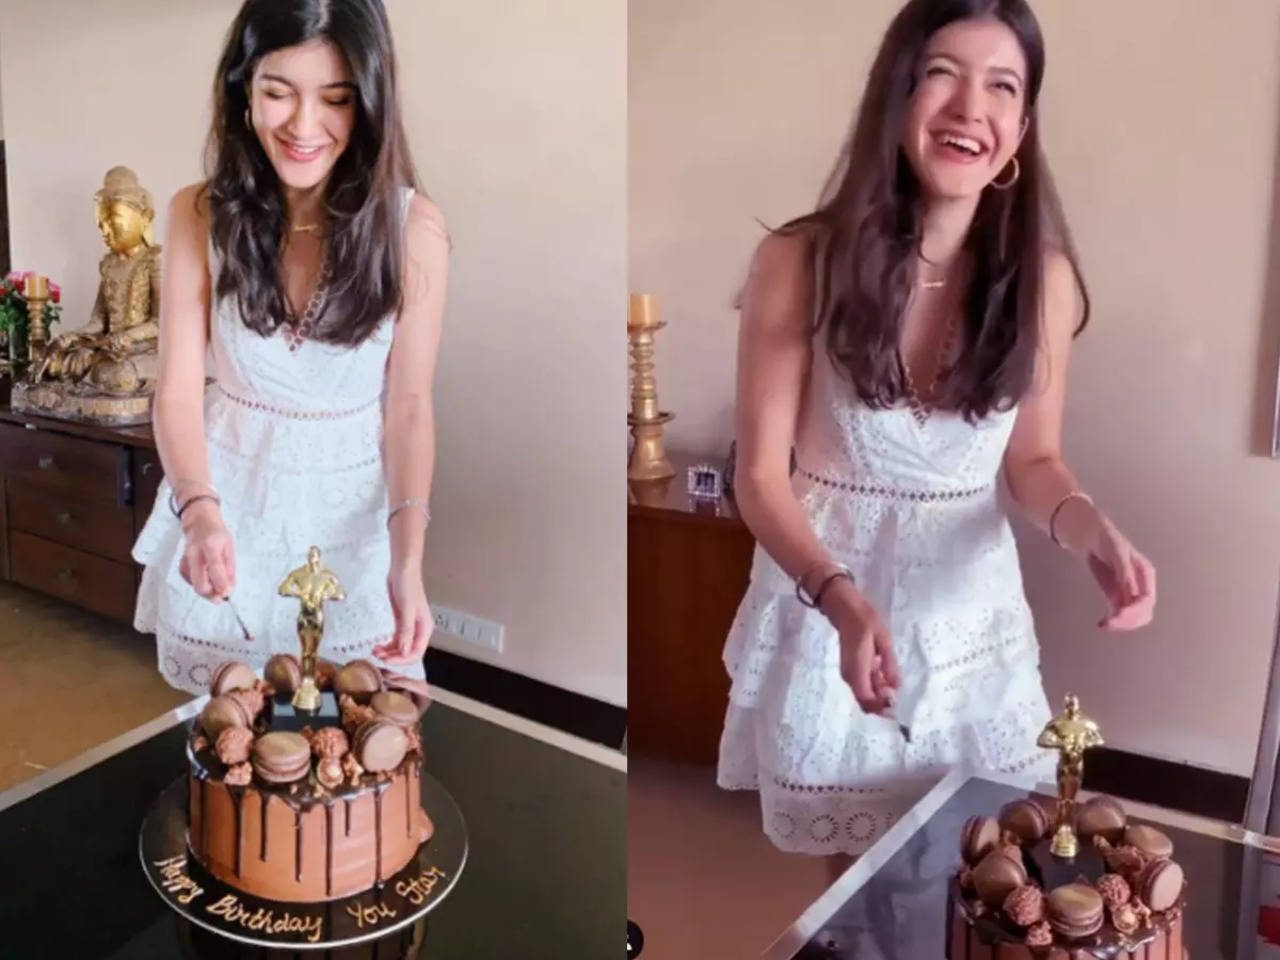 Birthday Celebration & Cake Cutting Ceremony | Birthday Vlog - YouTube